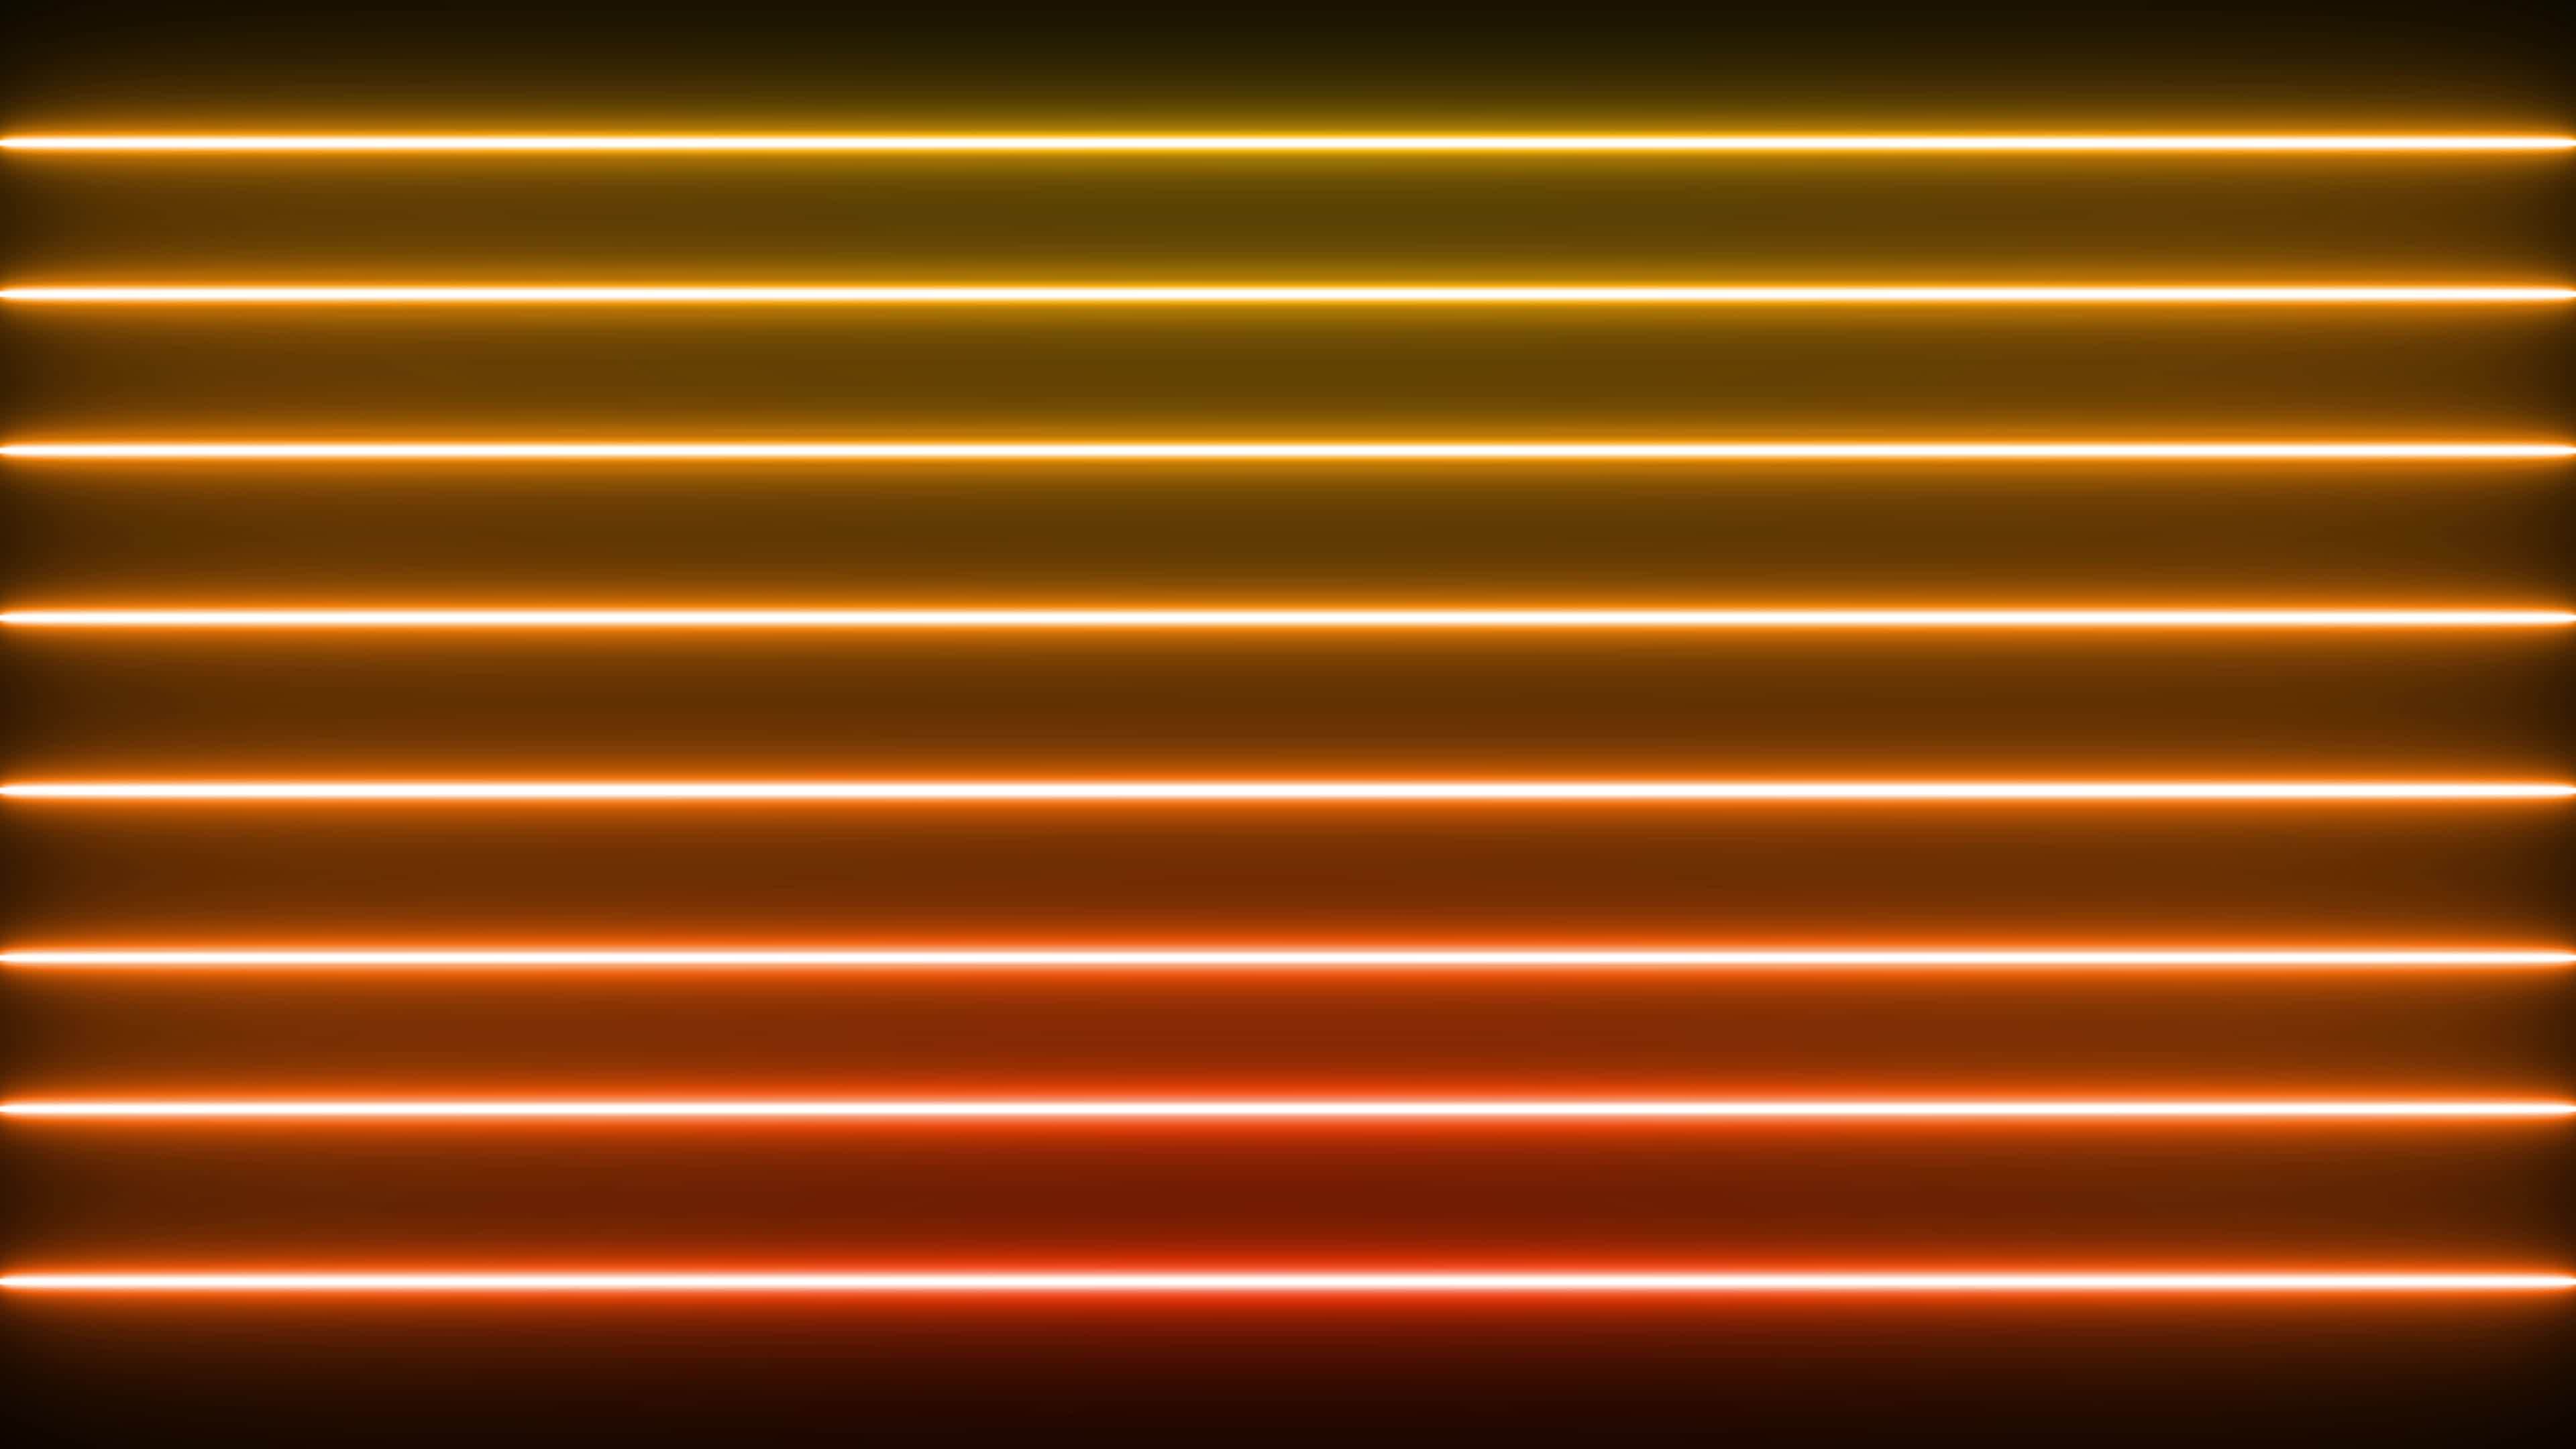 Hãy cùng ngắm nhìn ánh đèn neon sặc sỡ trên nền ngang lặp vòng đầy màu sắc, được quay trong độ phân giải 4K và tốc độ khung hình 60fps. Hình ảnh sống động sẽ đưa bạn vào một thế giới đầy màu sắc và sôi động.